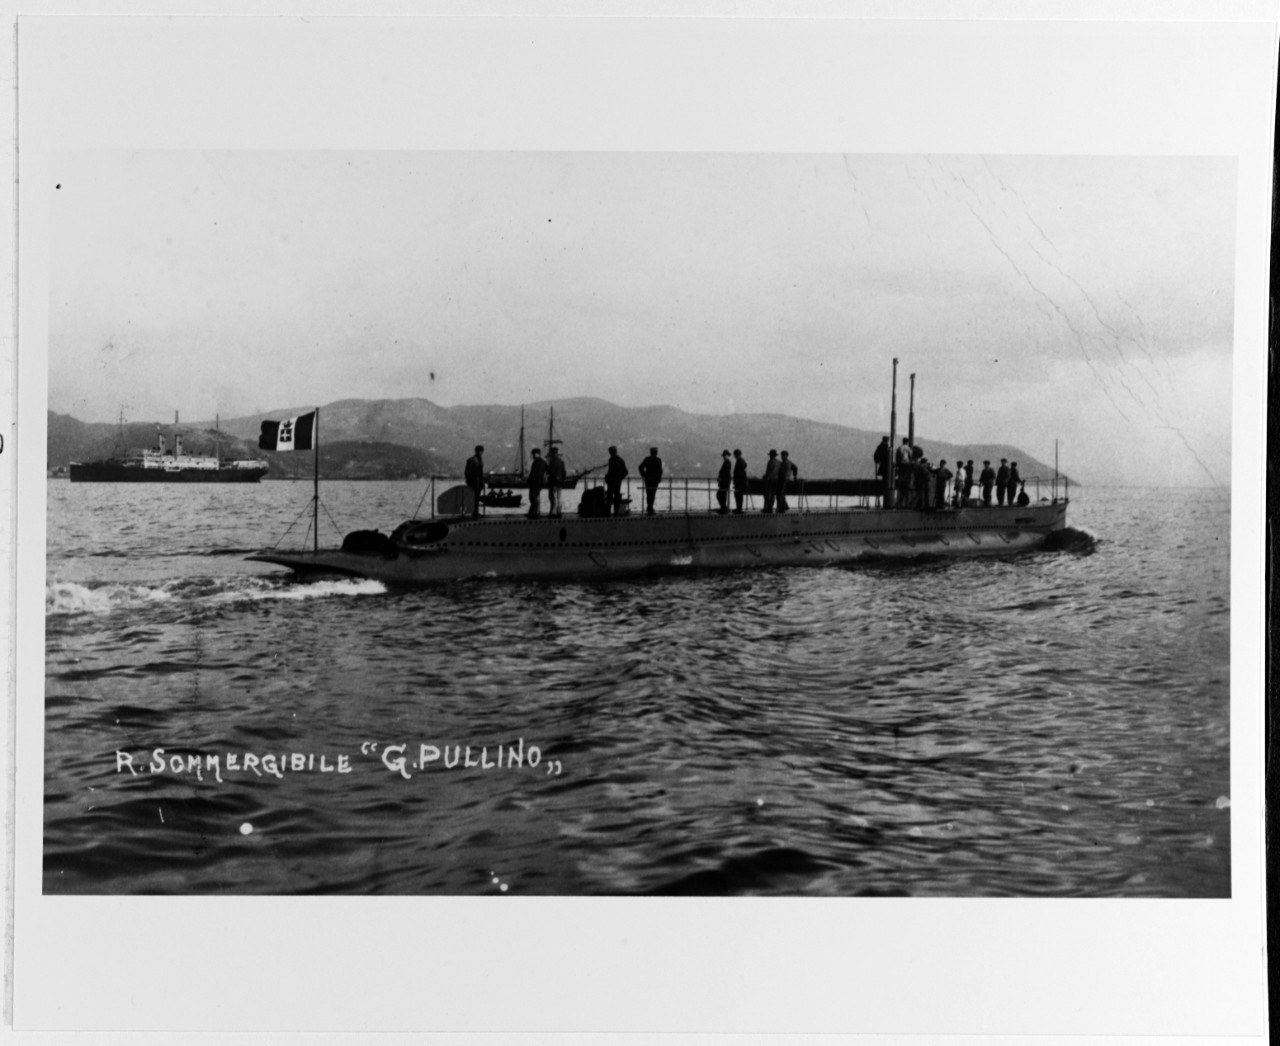 GIACINTO PULLINO (Italian submarine, 1913-1917)